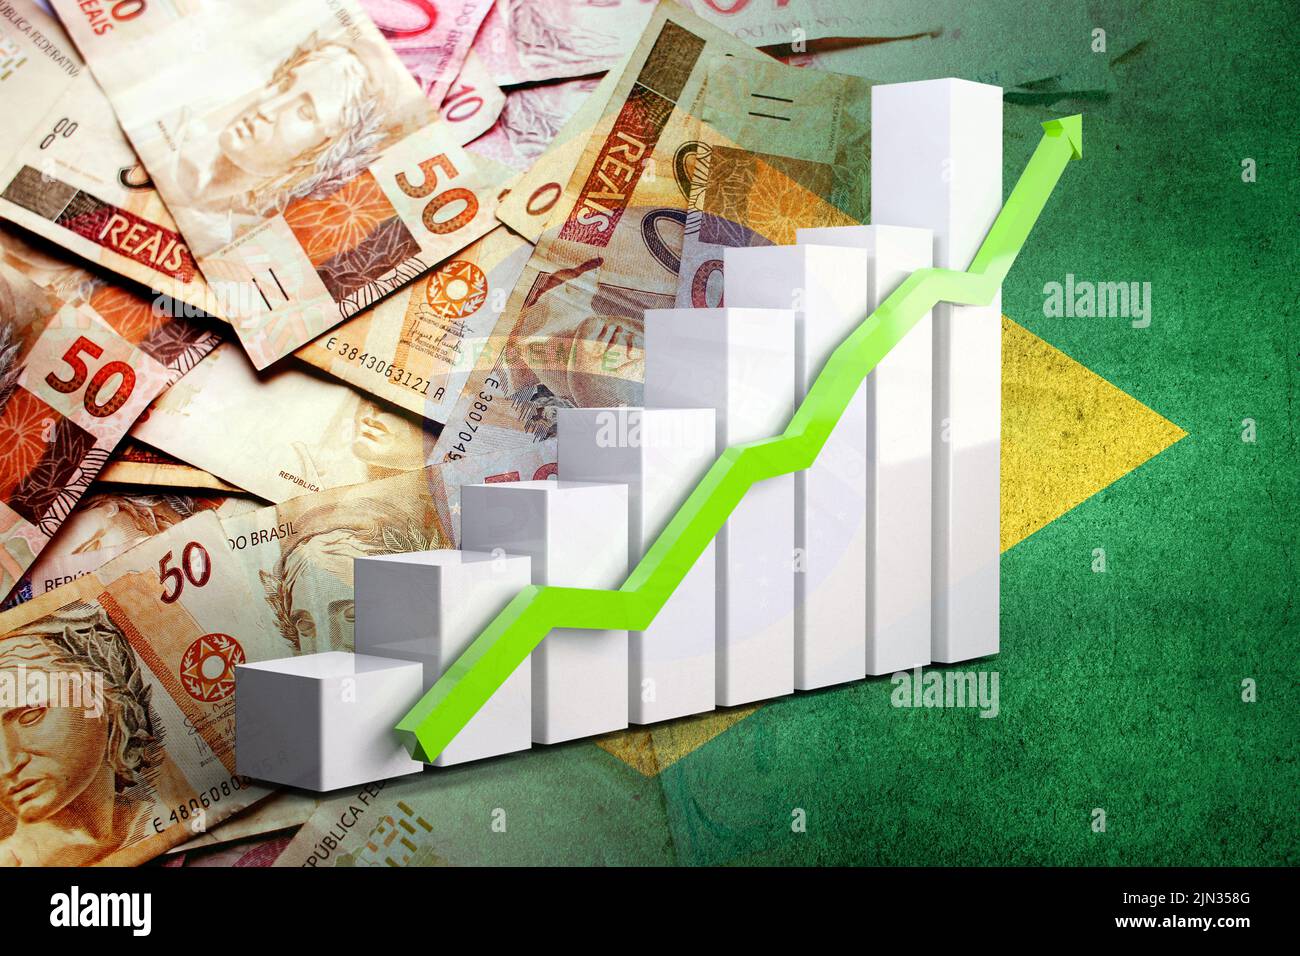 Diagramm der Wirtschaft: Aufwärtspfeil, brasilianische Reals-Bargeldscheine und Brasilien-Flagge Stockfoto